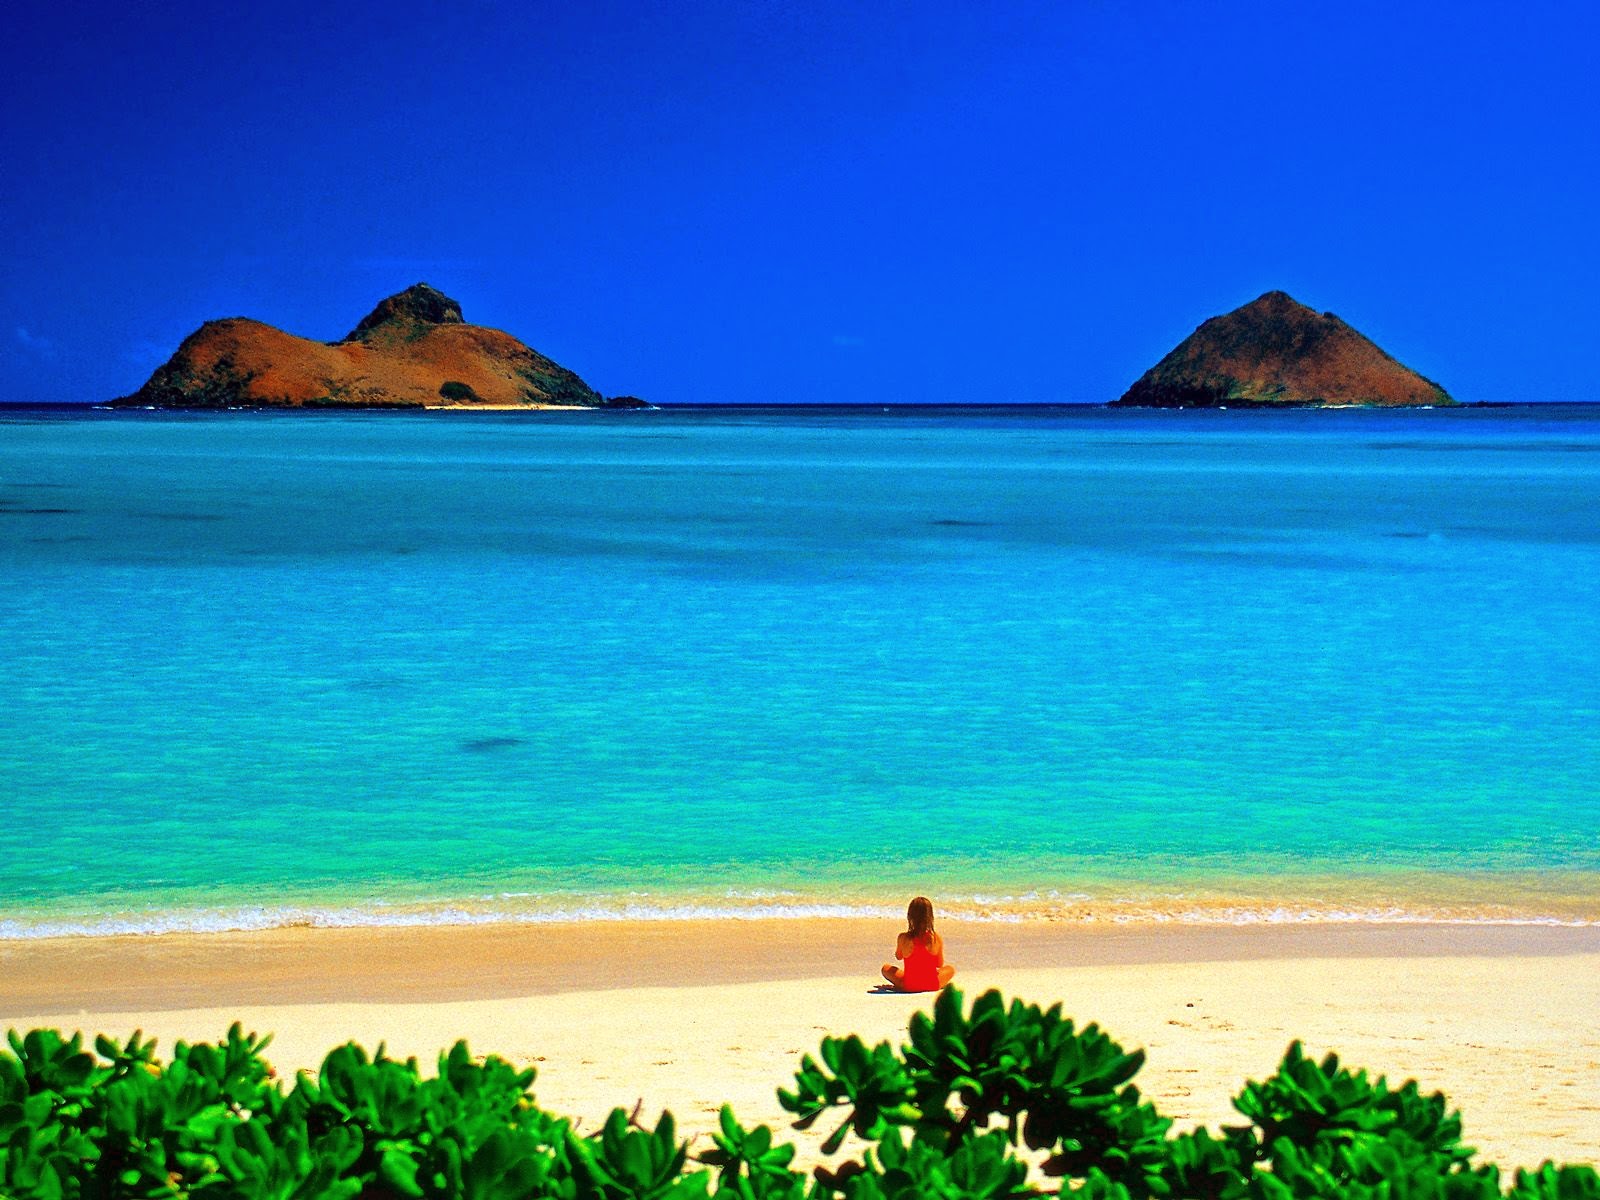 Hawaïi's Land: Let's Visit Hawaïi